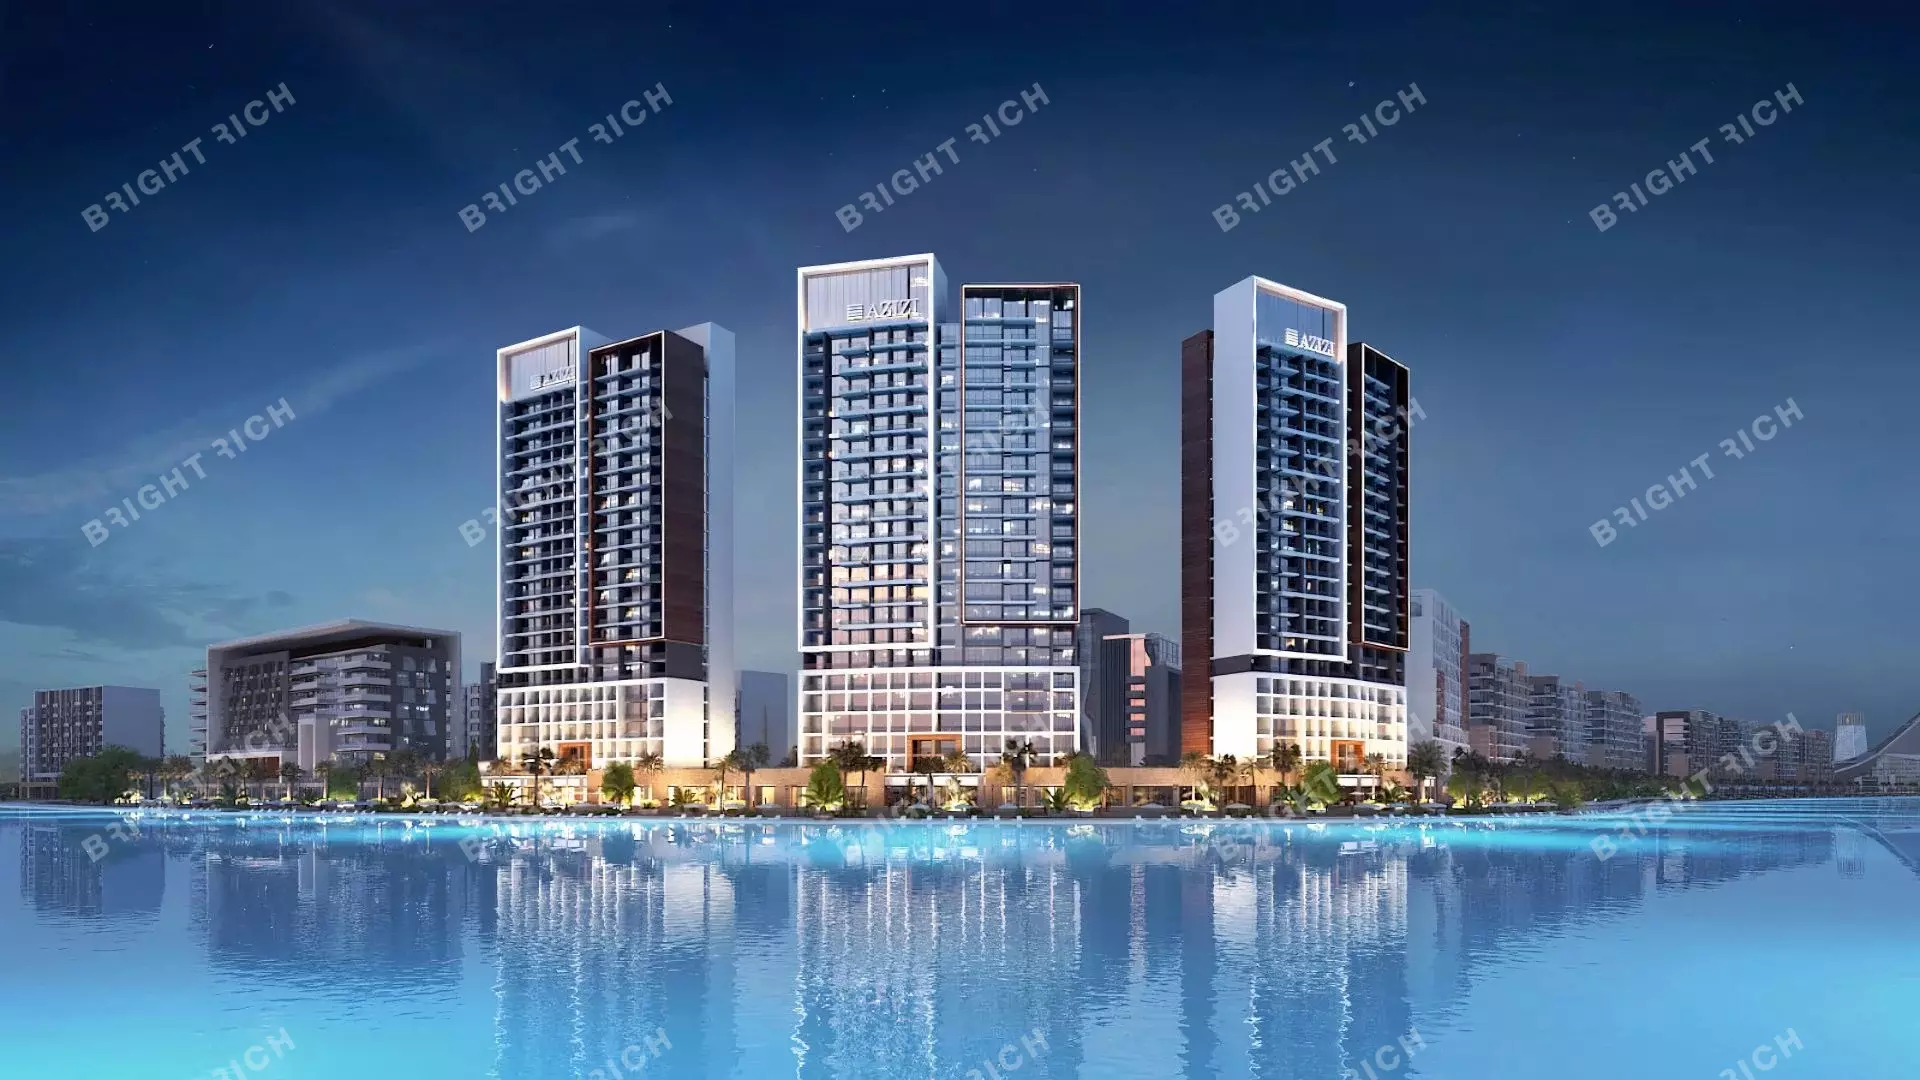 Azizi Riviera Building 8, apart complex in Dubai